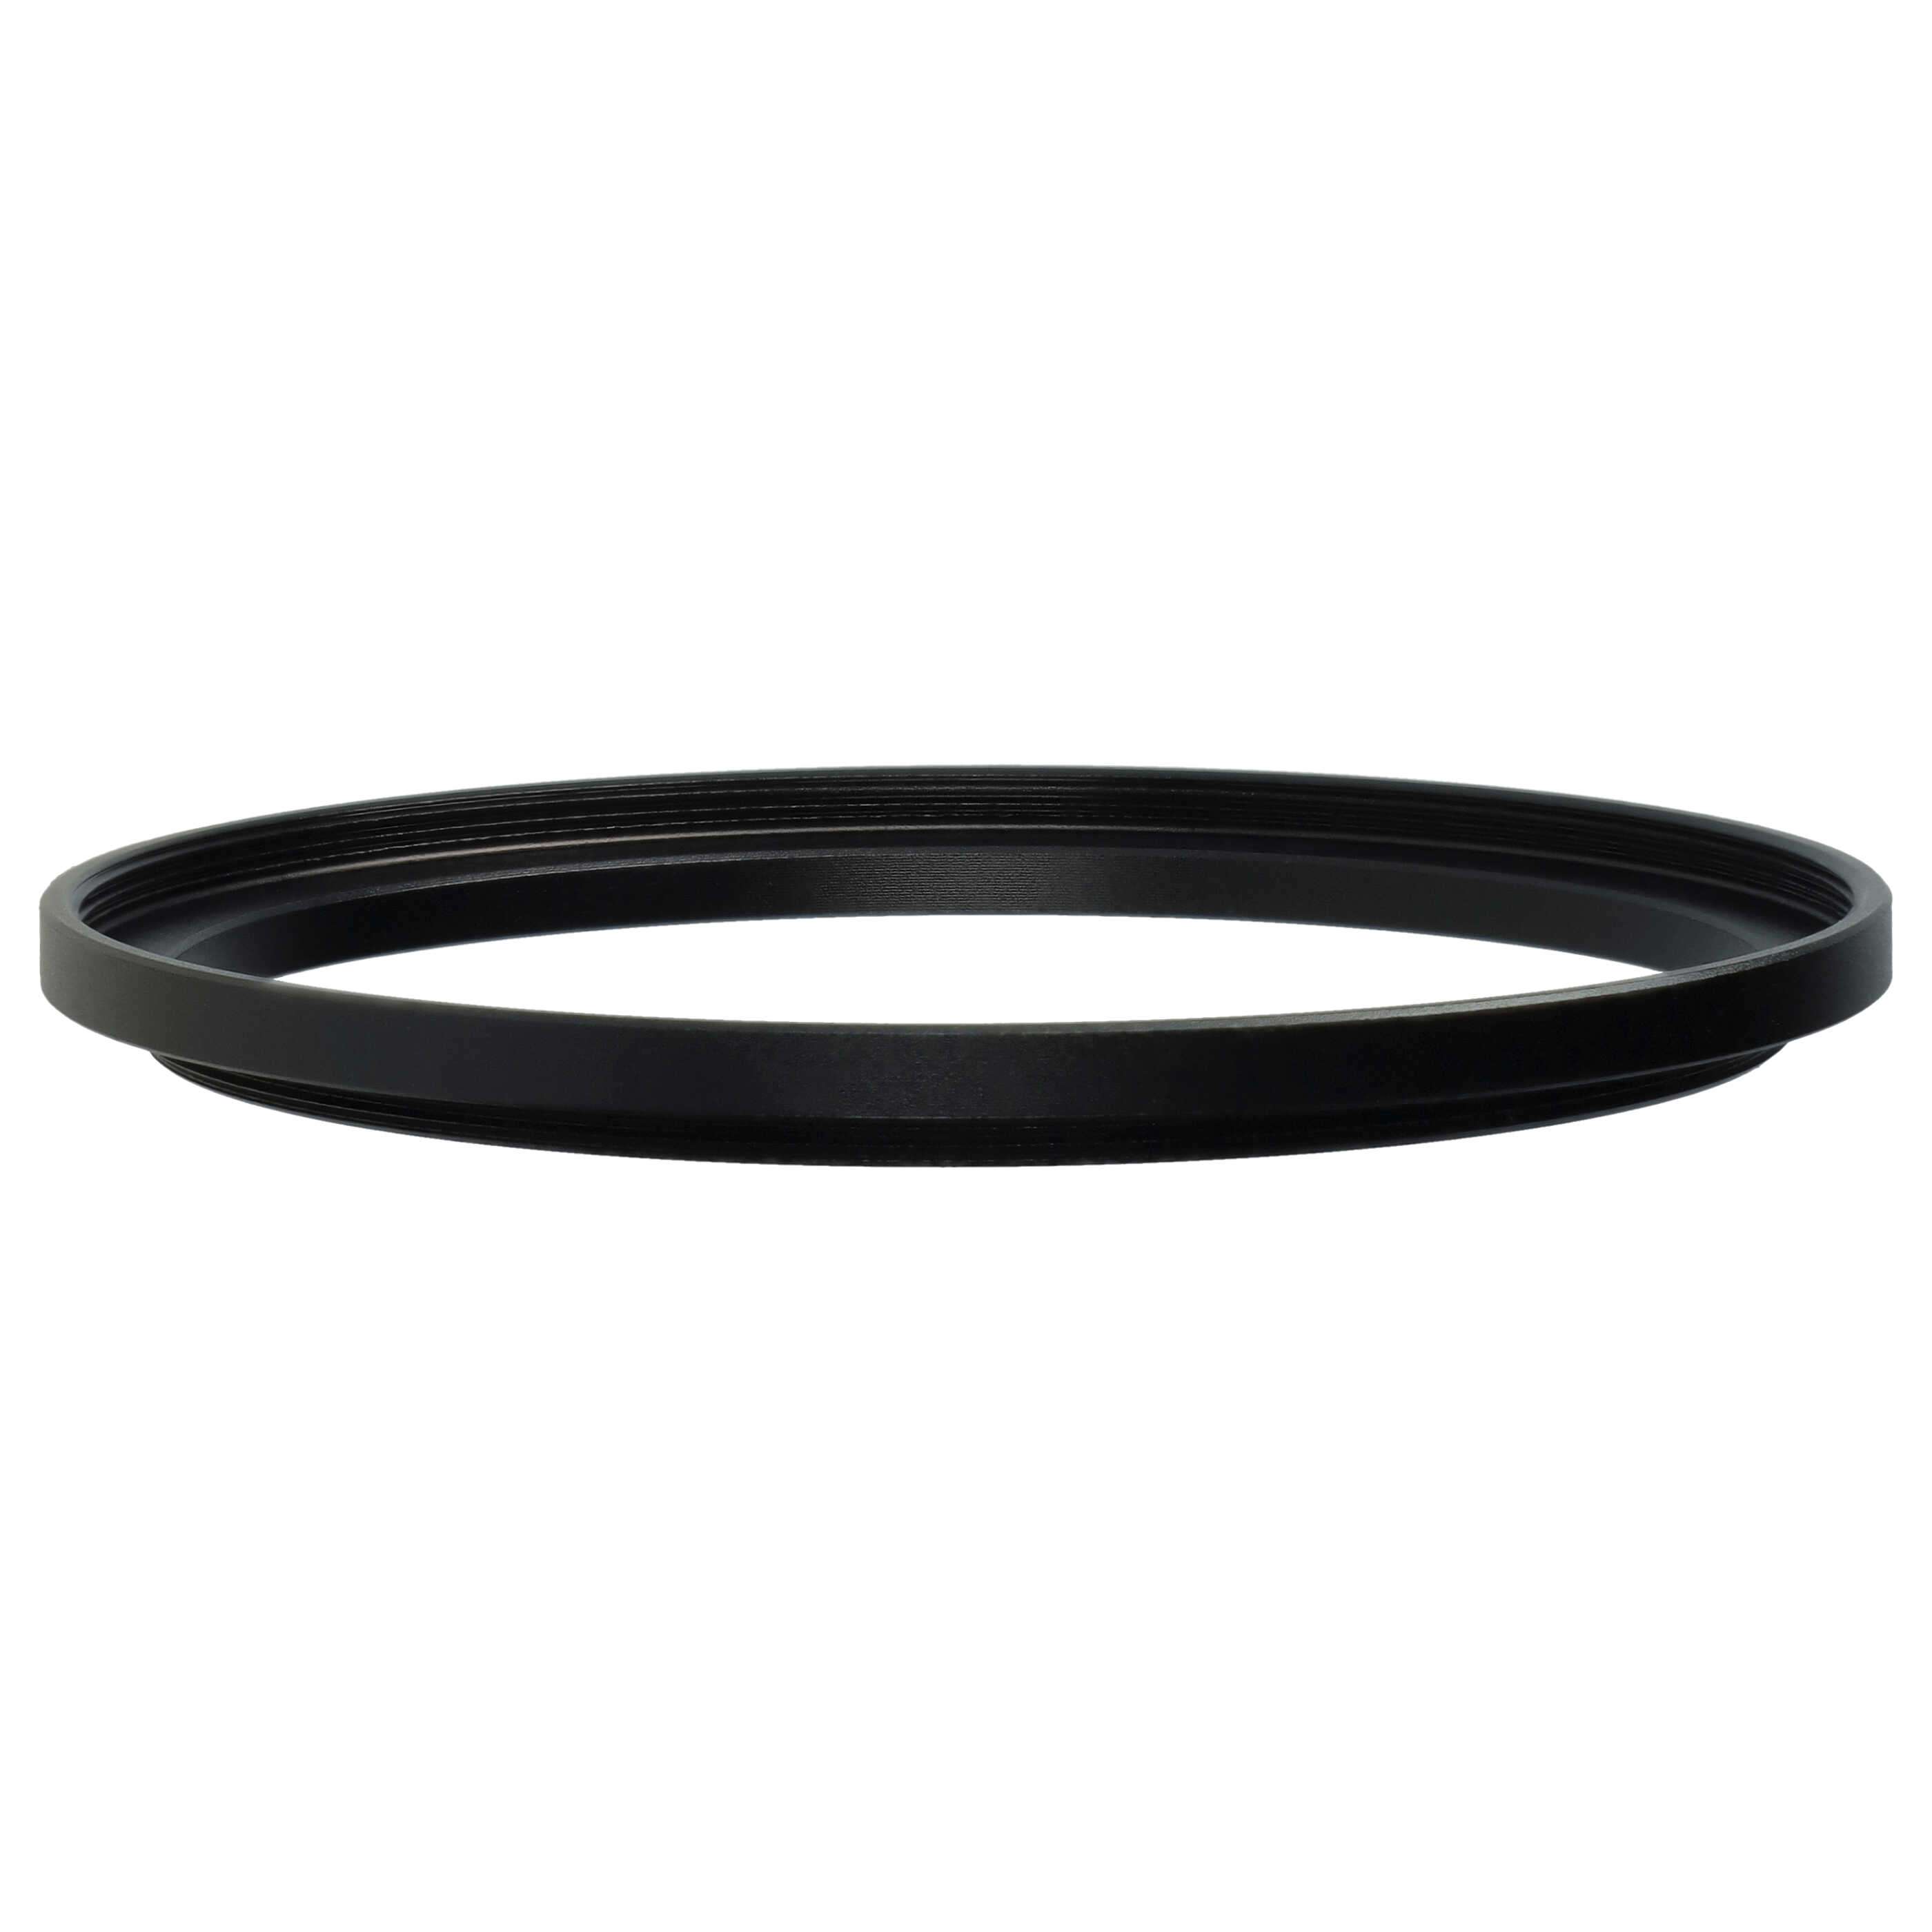 Step-Up-Ring Adapter 67 mm auf 72 mm passend für diverse Kamera-Objektive - Filteradapter